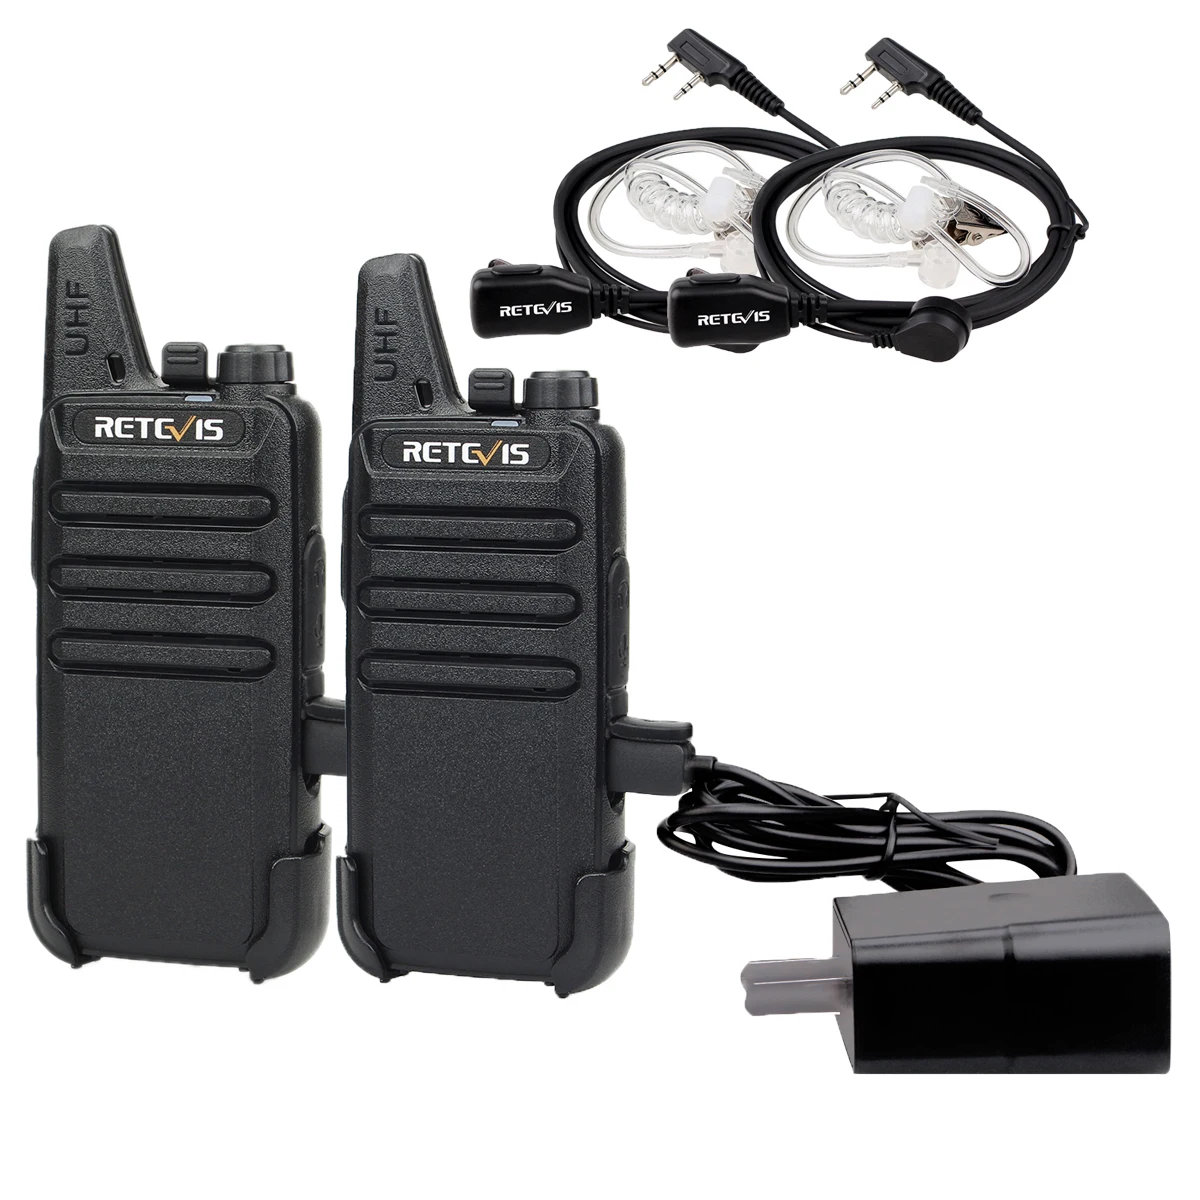 

1 Pair Retevis RT22 Two Way Radio UHF 16CH VOX Walkie Talkies with Air Acoustic Earpiece Long range walkie talkie